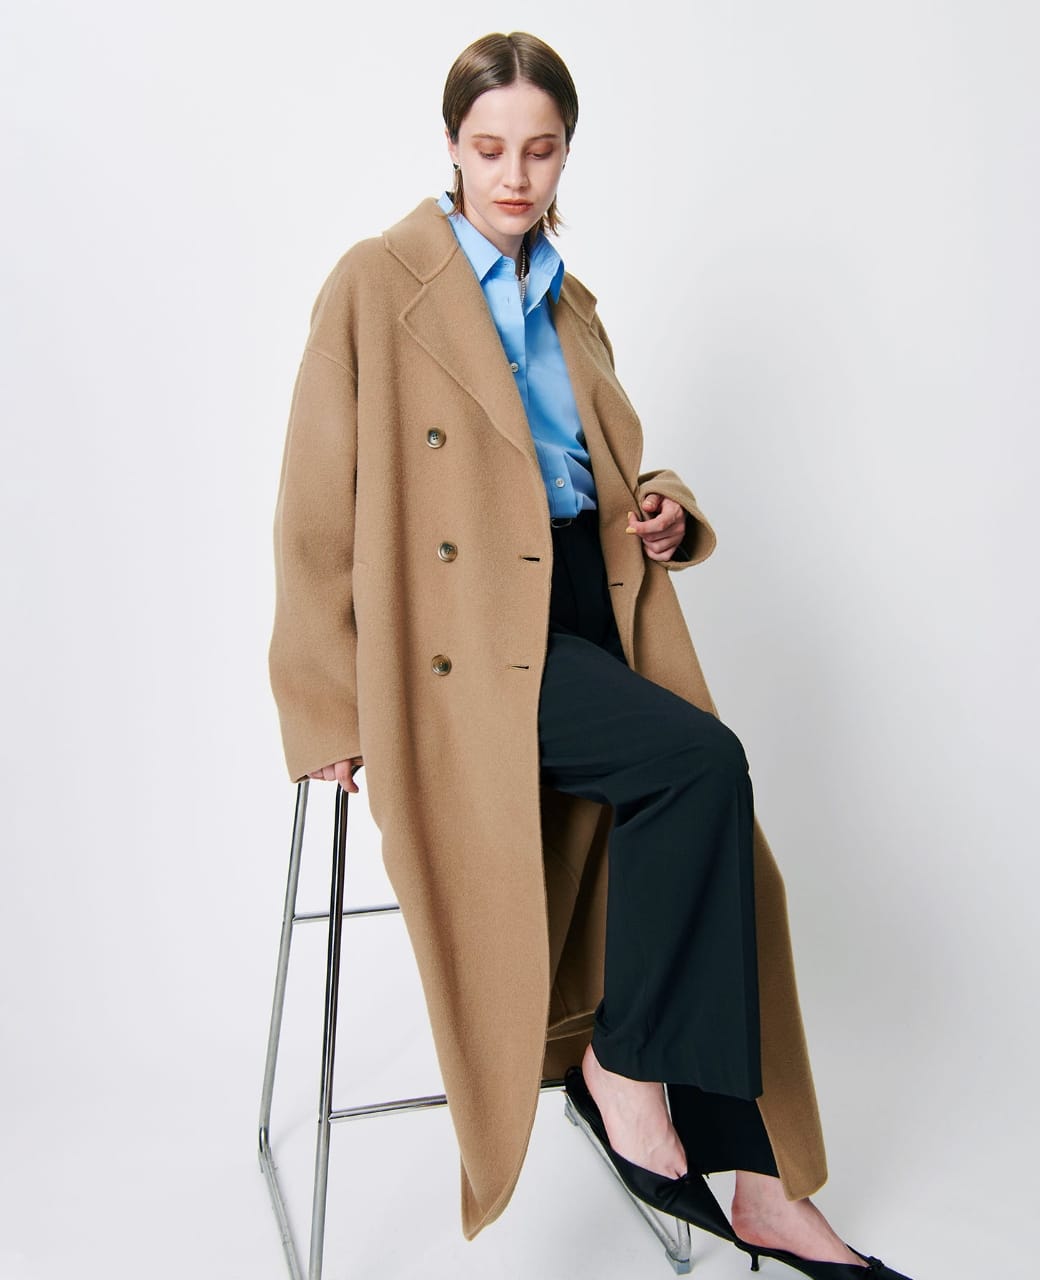 キャメルのダブルロングリバーコートを着用している女性の写真